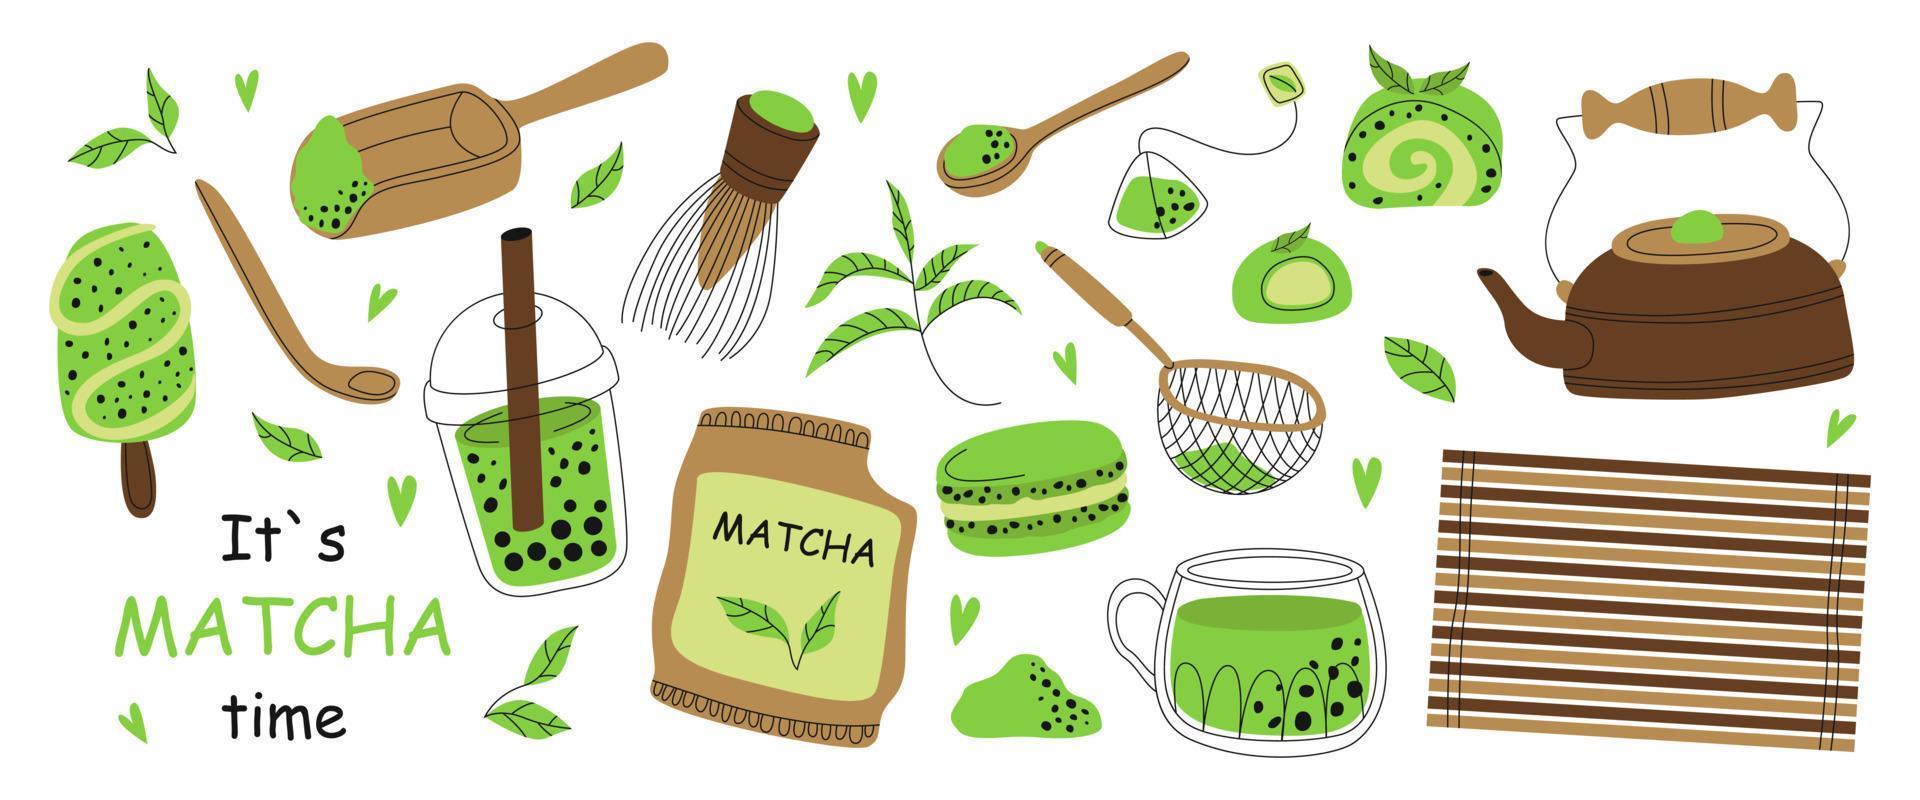 conjunto de vários produtos de cerimônia do chá matcha. chá verde em pó matcha latte tradicional japonês, batedor, mochi, macarons, colher de bambu, folhas de chá, chá de bolhas. cultura de chá verde orgânico saudável. vetor